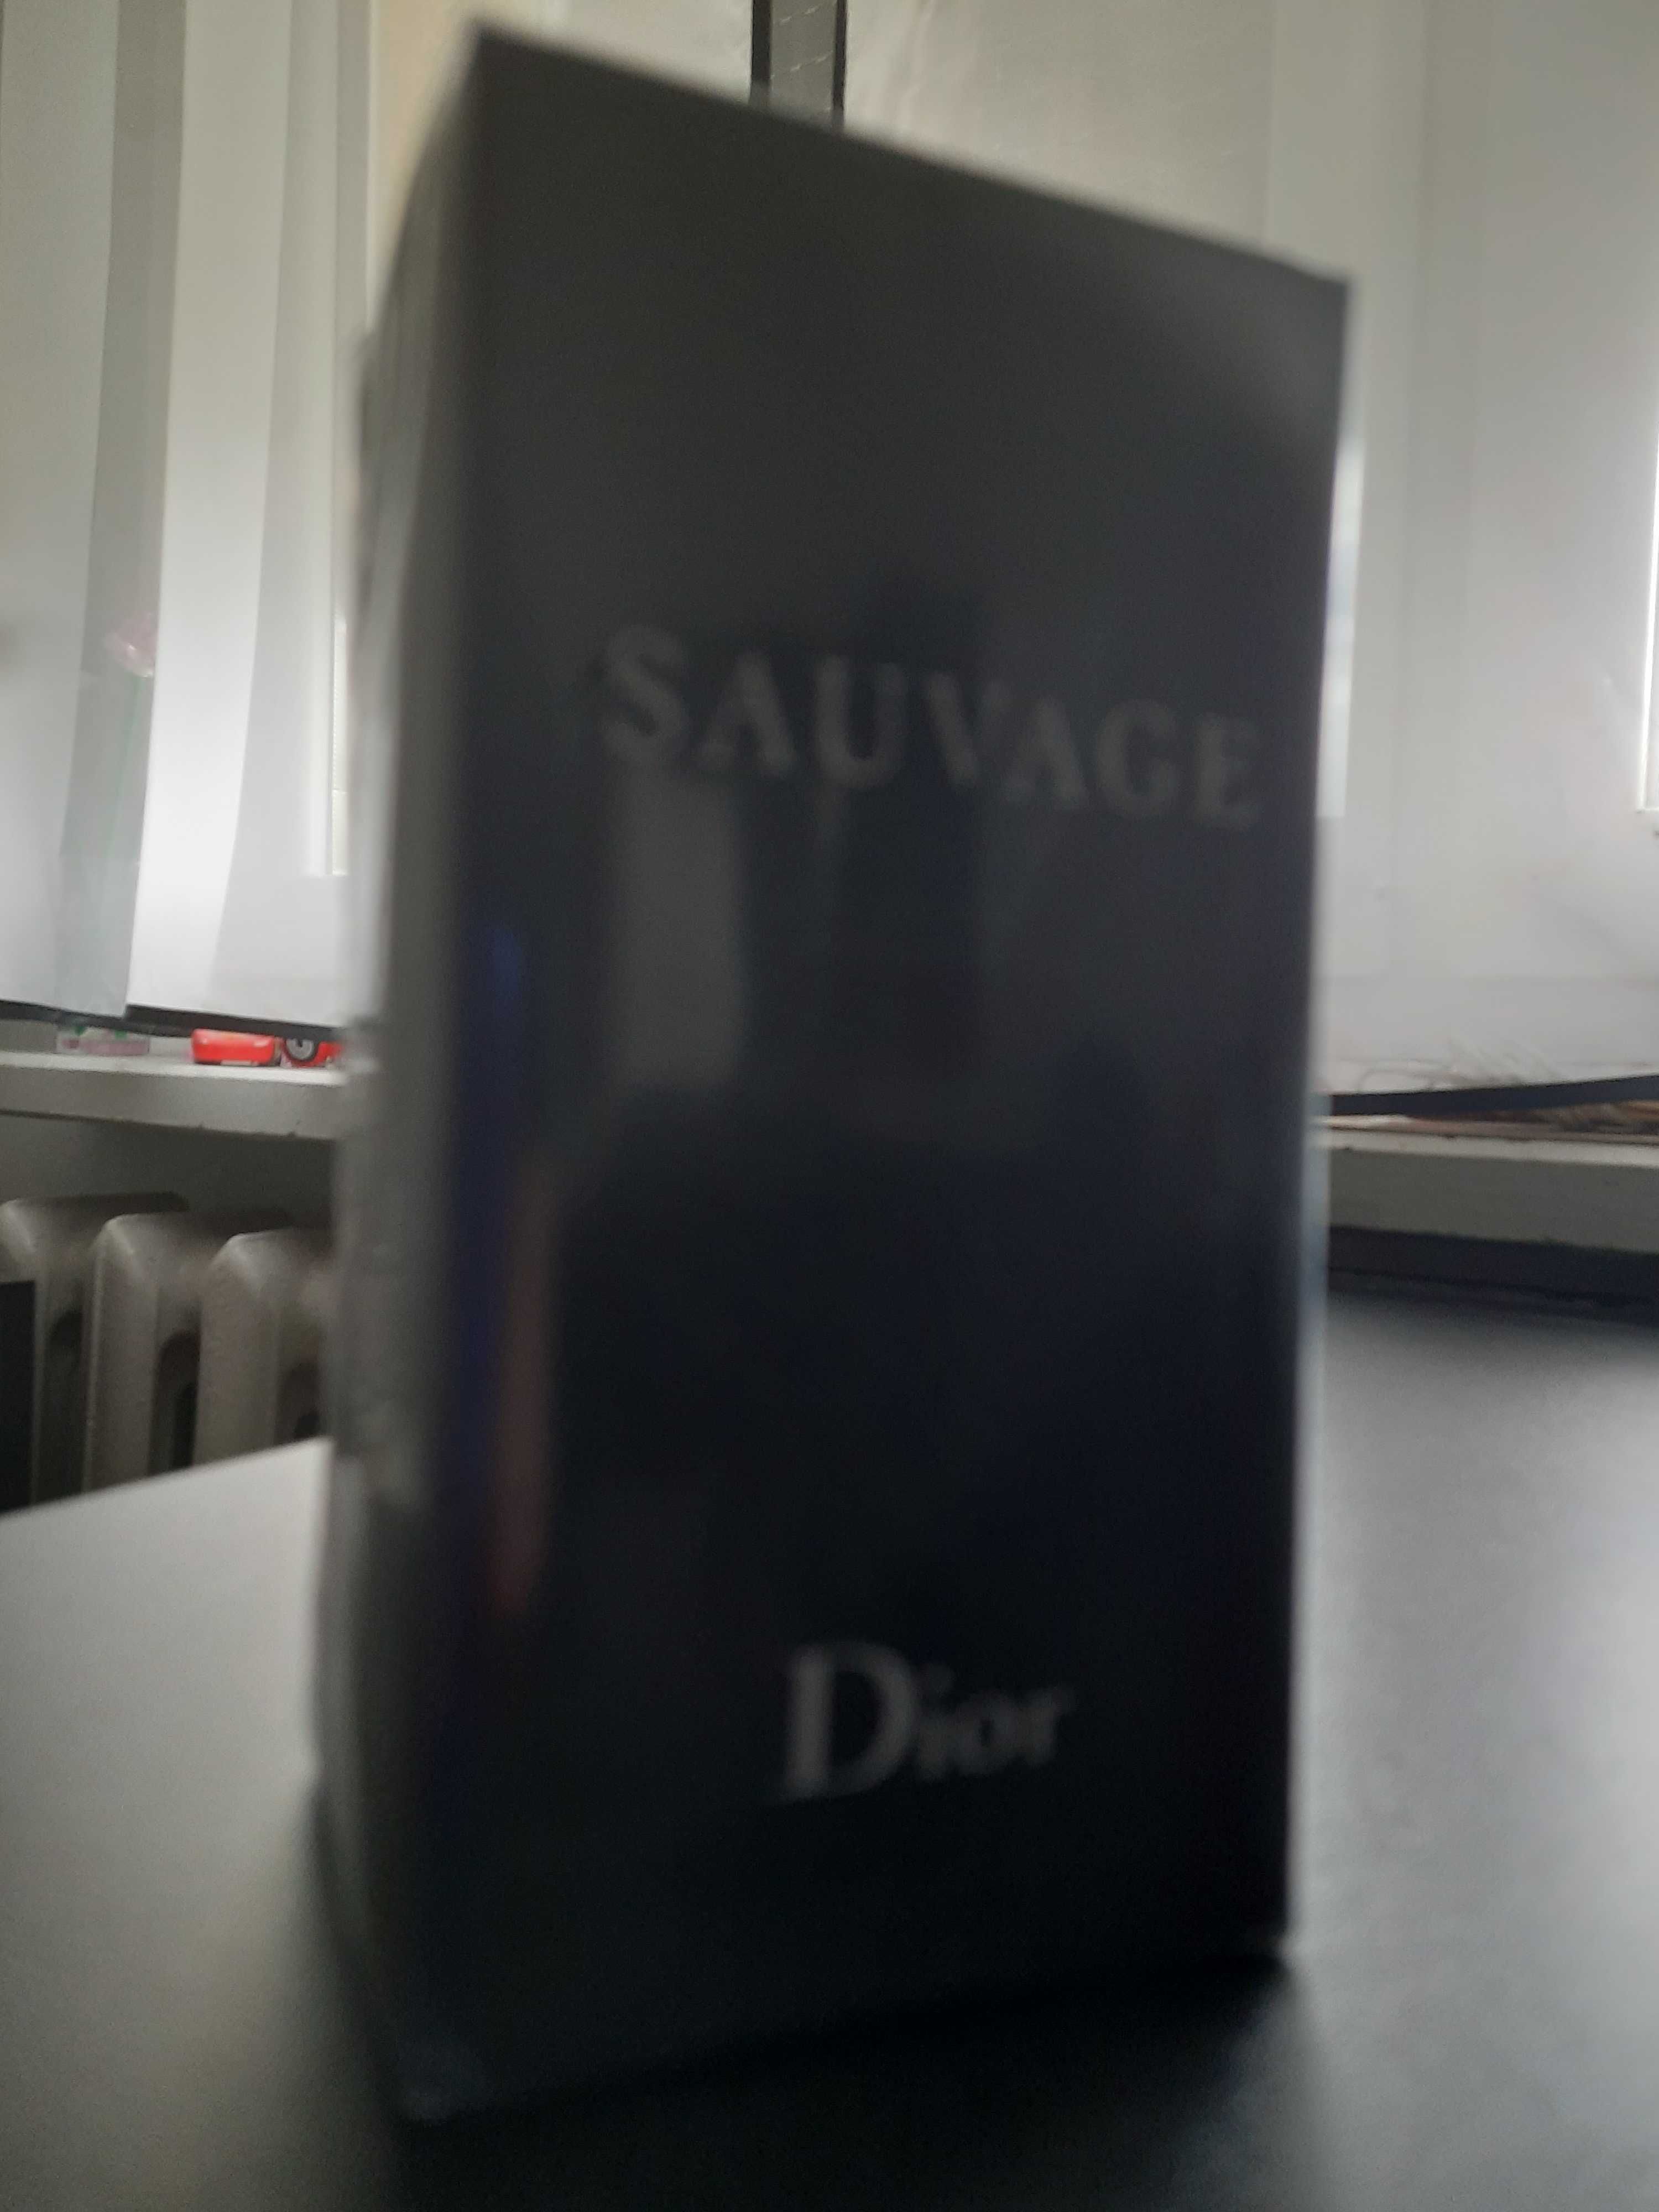 Perfum dior sauvage